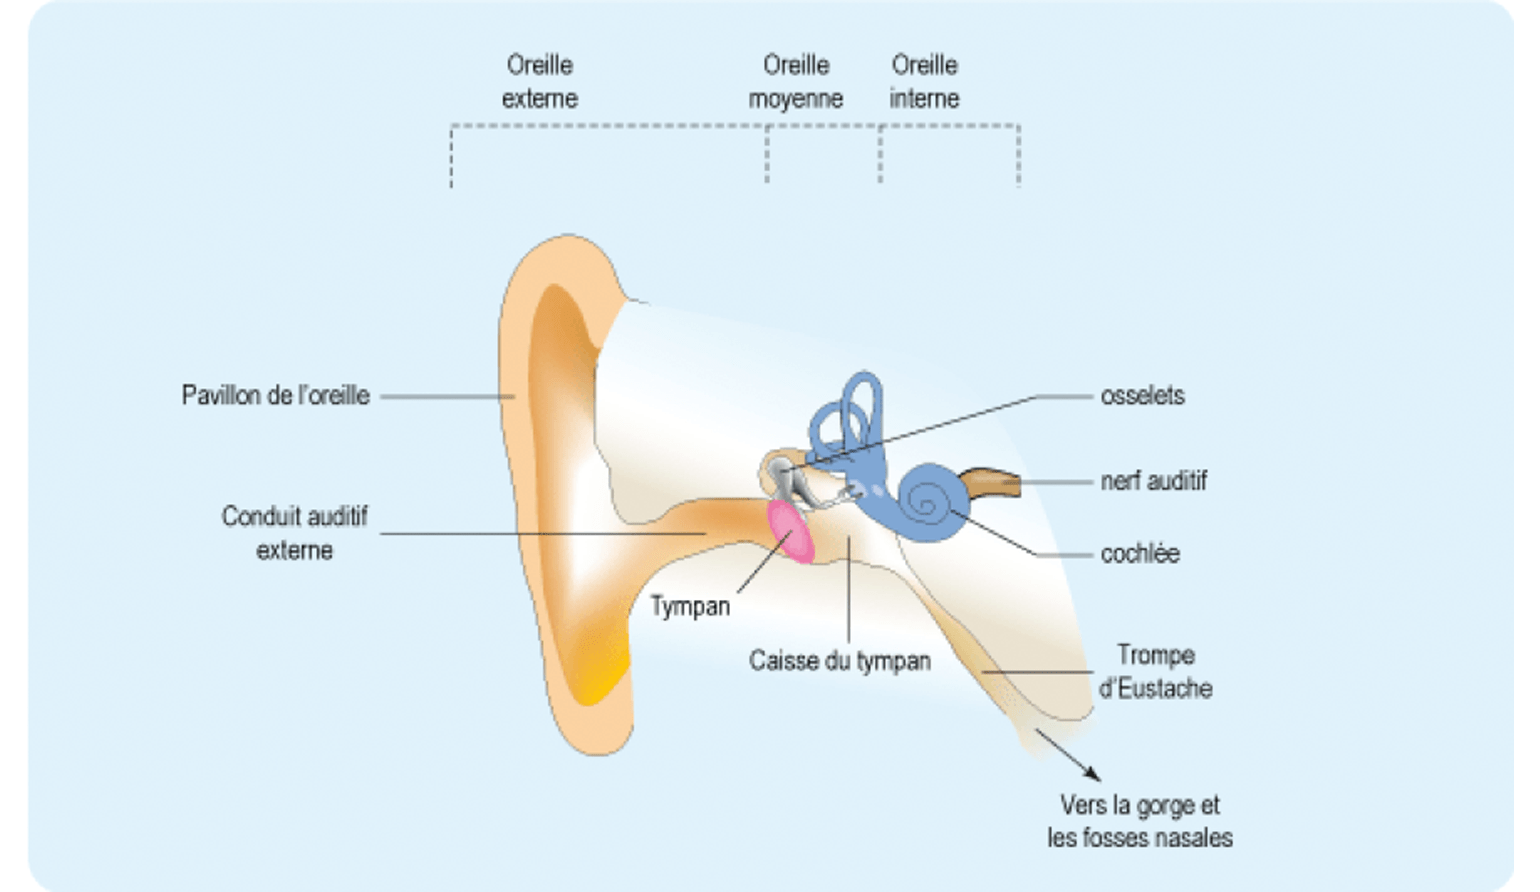 anatomie de l'oreille - onecoute